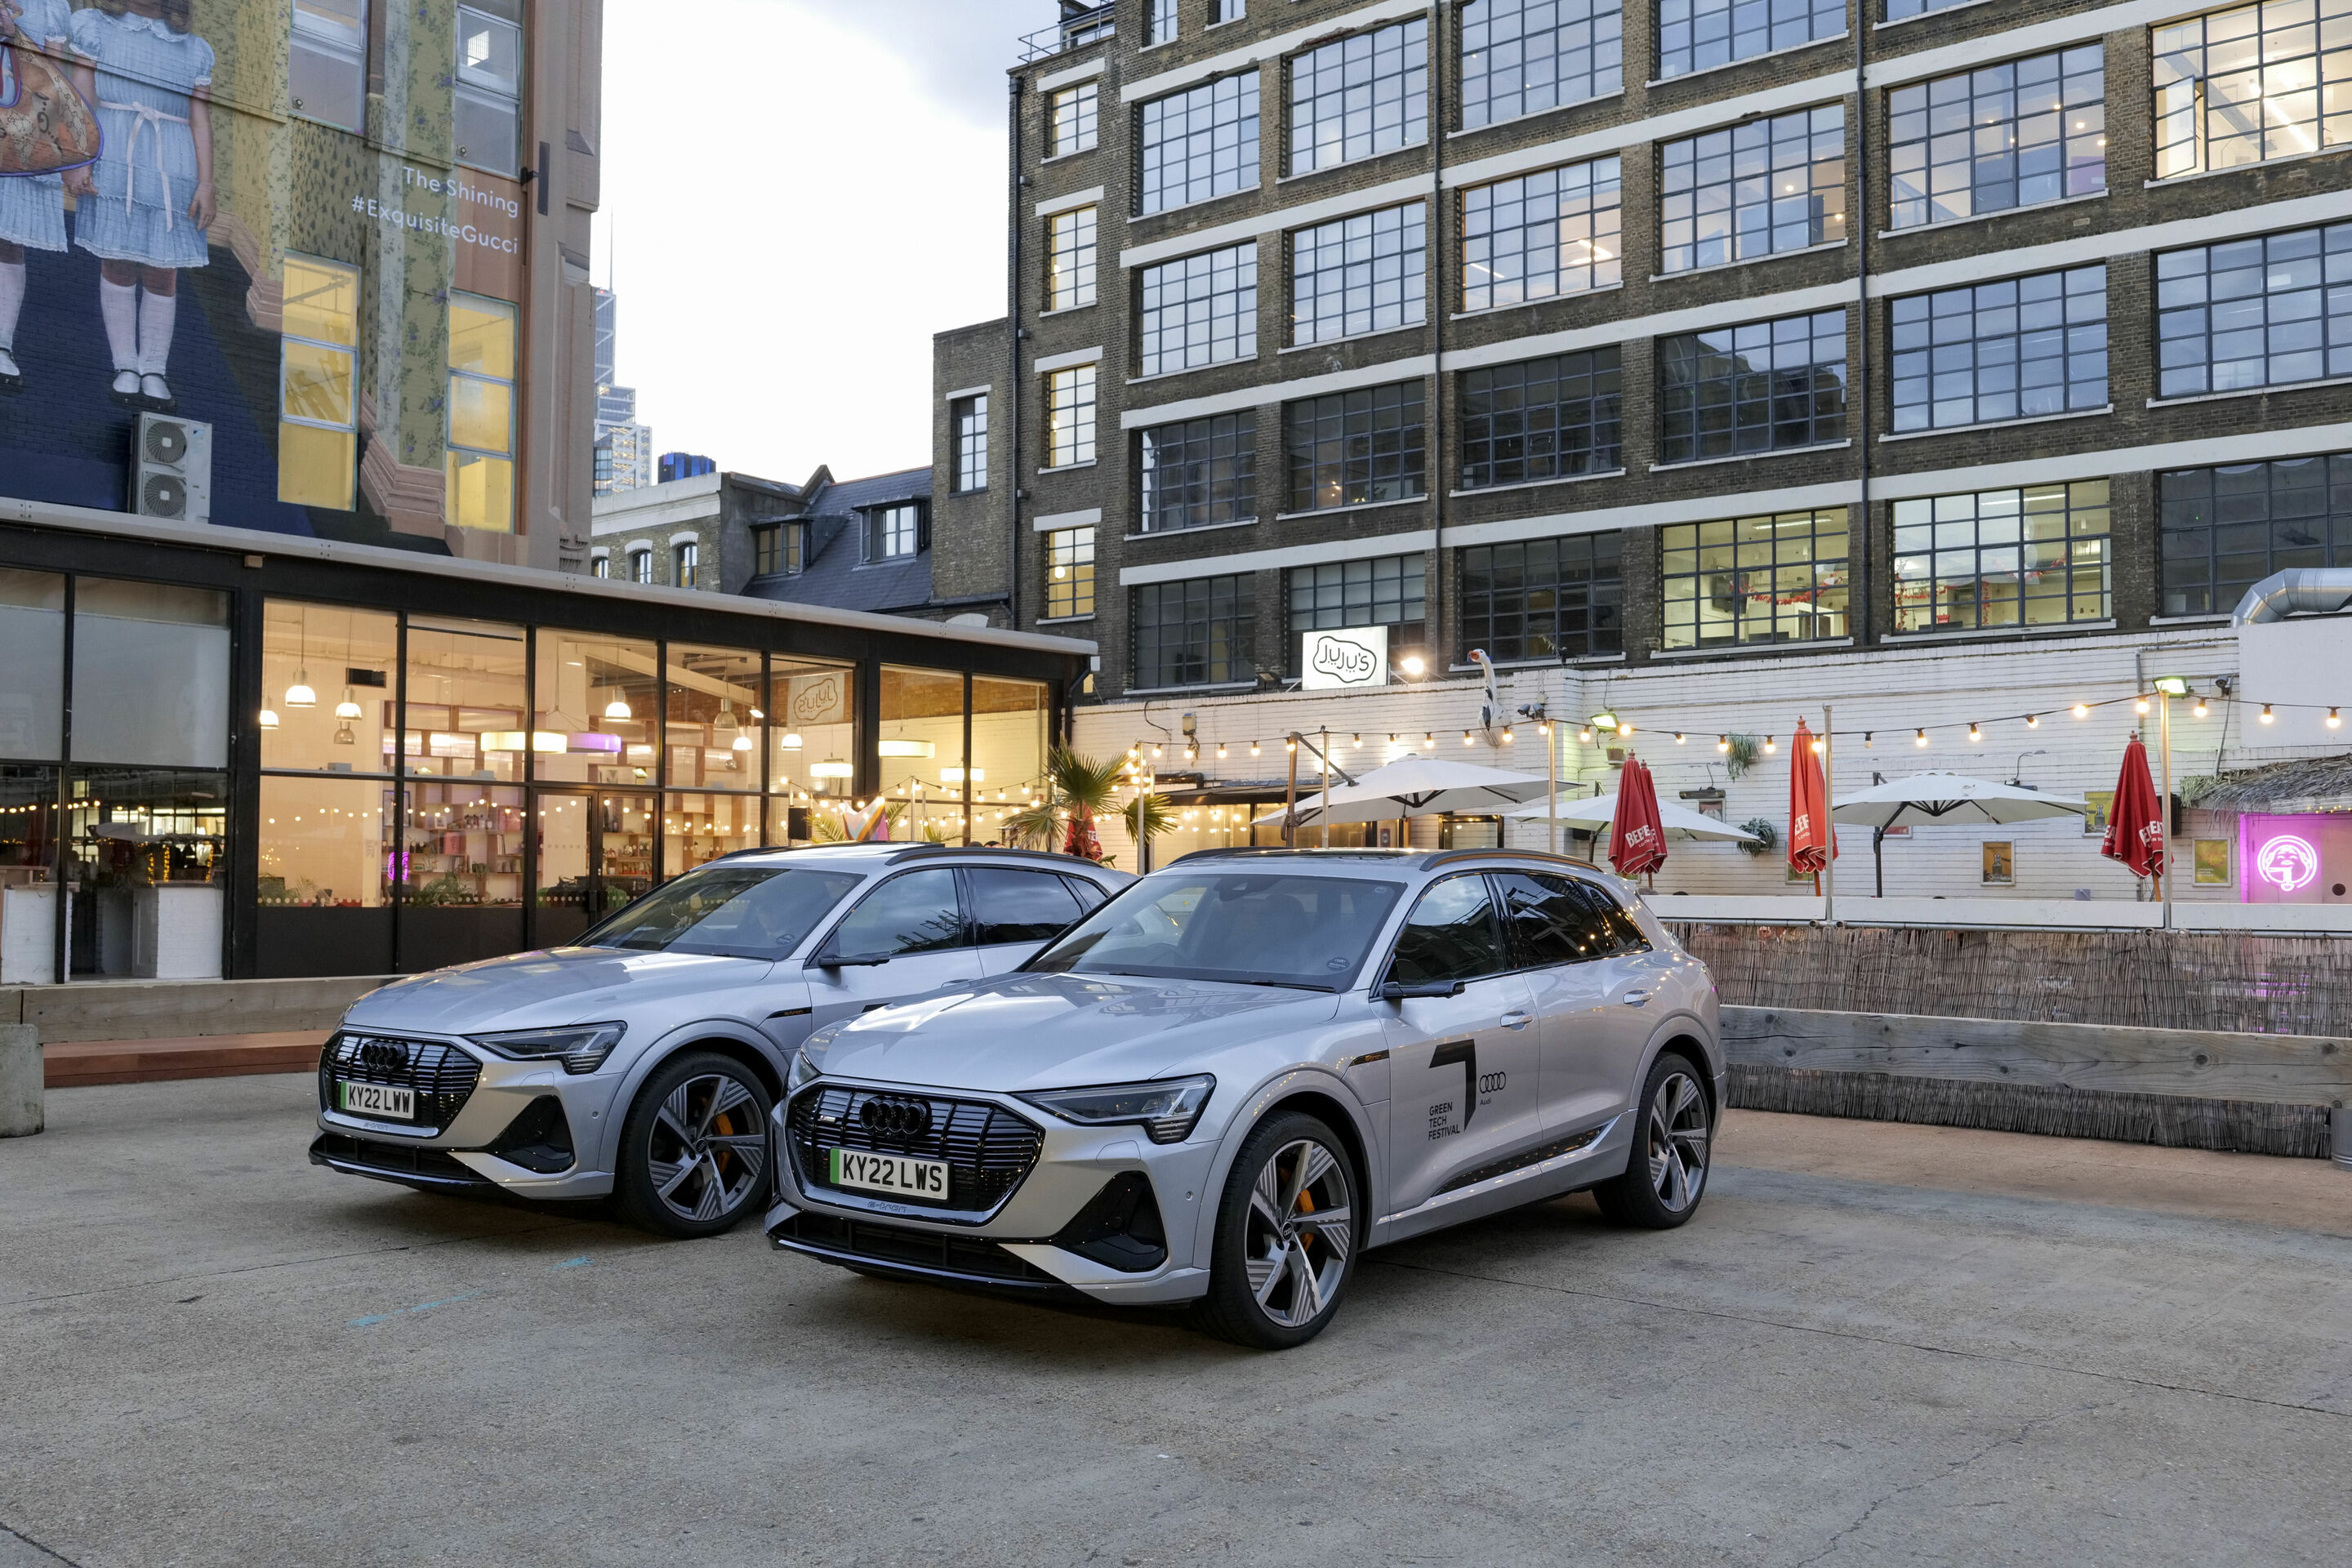 Audi Urban Purifier – der Feinstaubfilter für Elektrofahrzeuge